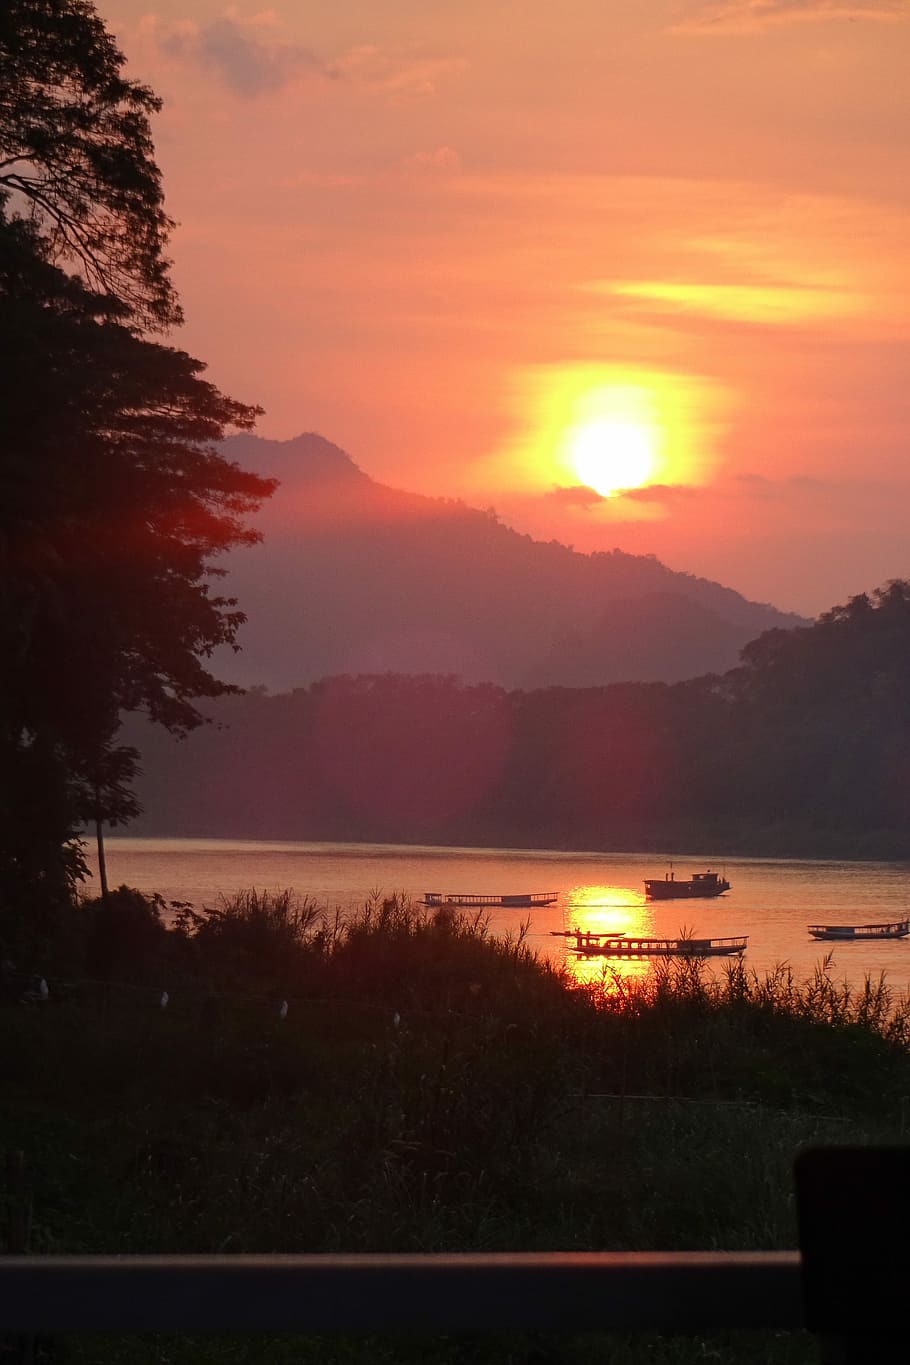 Laos, Luang Prabang, Rio Mekong, paisagem, pôr do sol, paisagens, reflexão, cena tranquila, beleza na natureza, silhueta